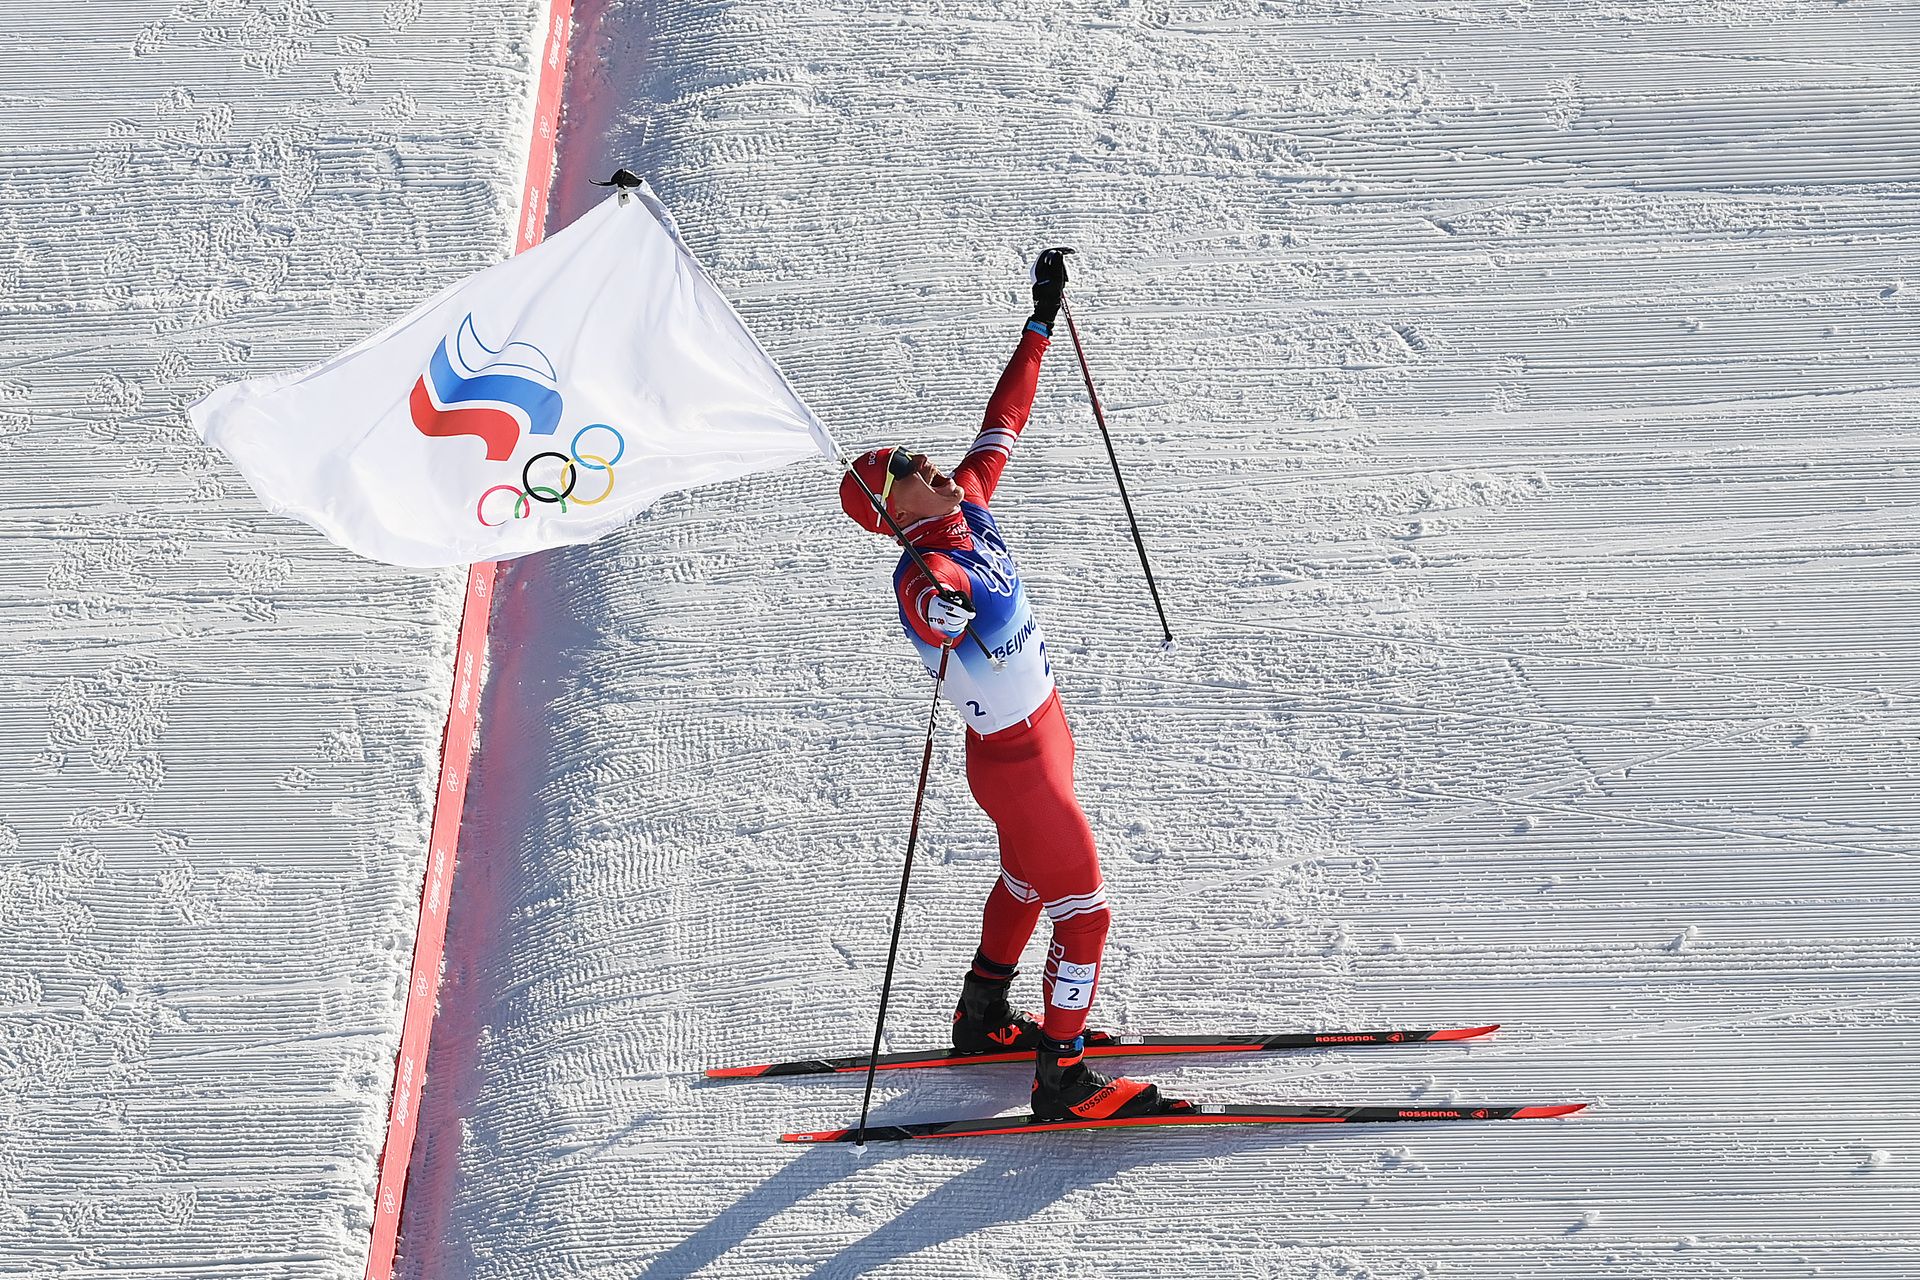 Ски бегачът Александър Болшунов пък обра медалите в своя спорт